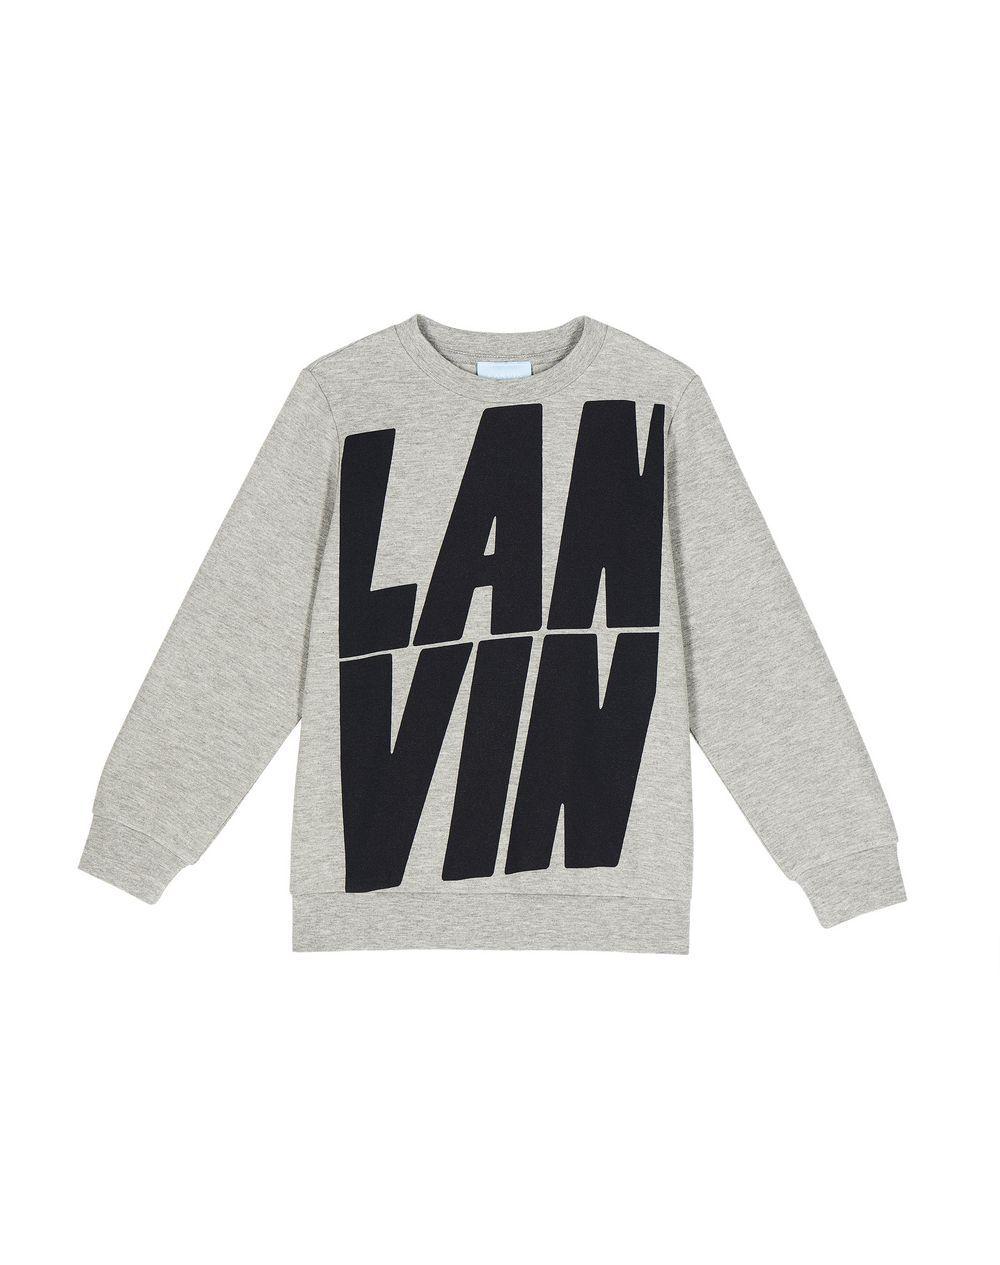 Lanvin Logo - Lanvin LANVIN LOGO SWEATSHIRT, Knitwear Sweater Childrenswear